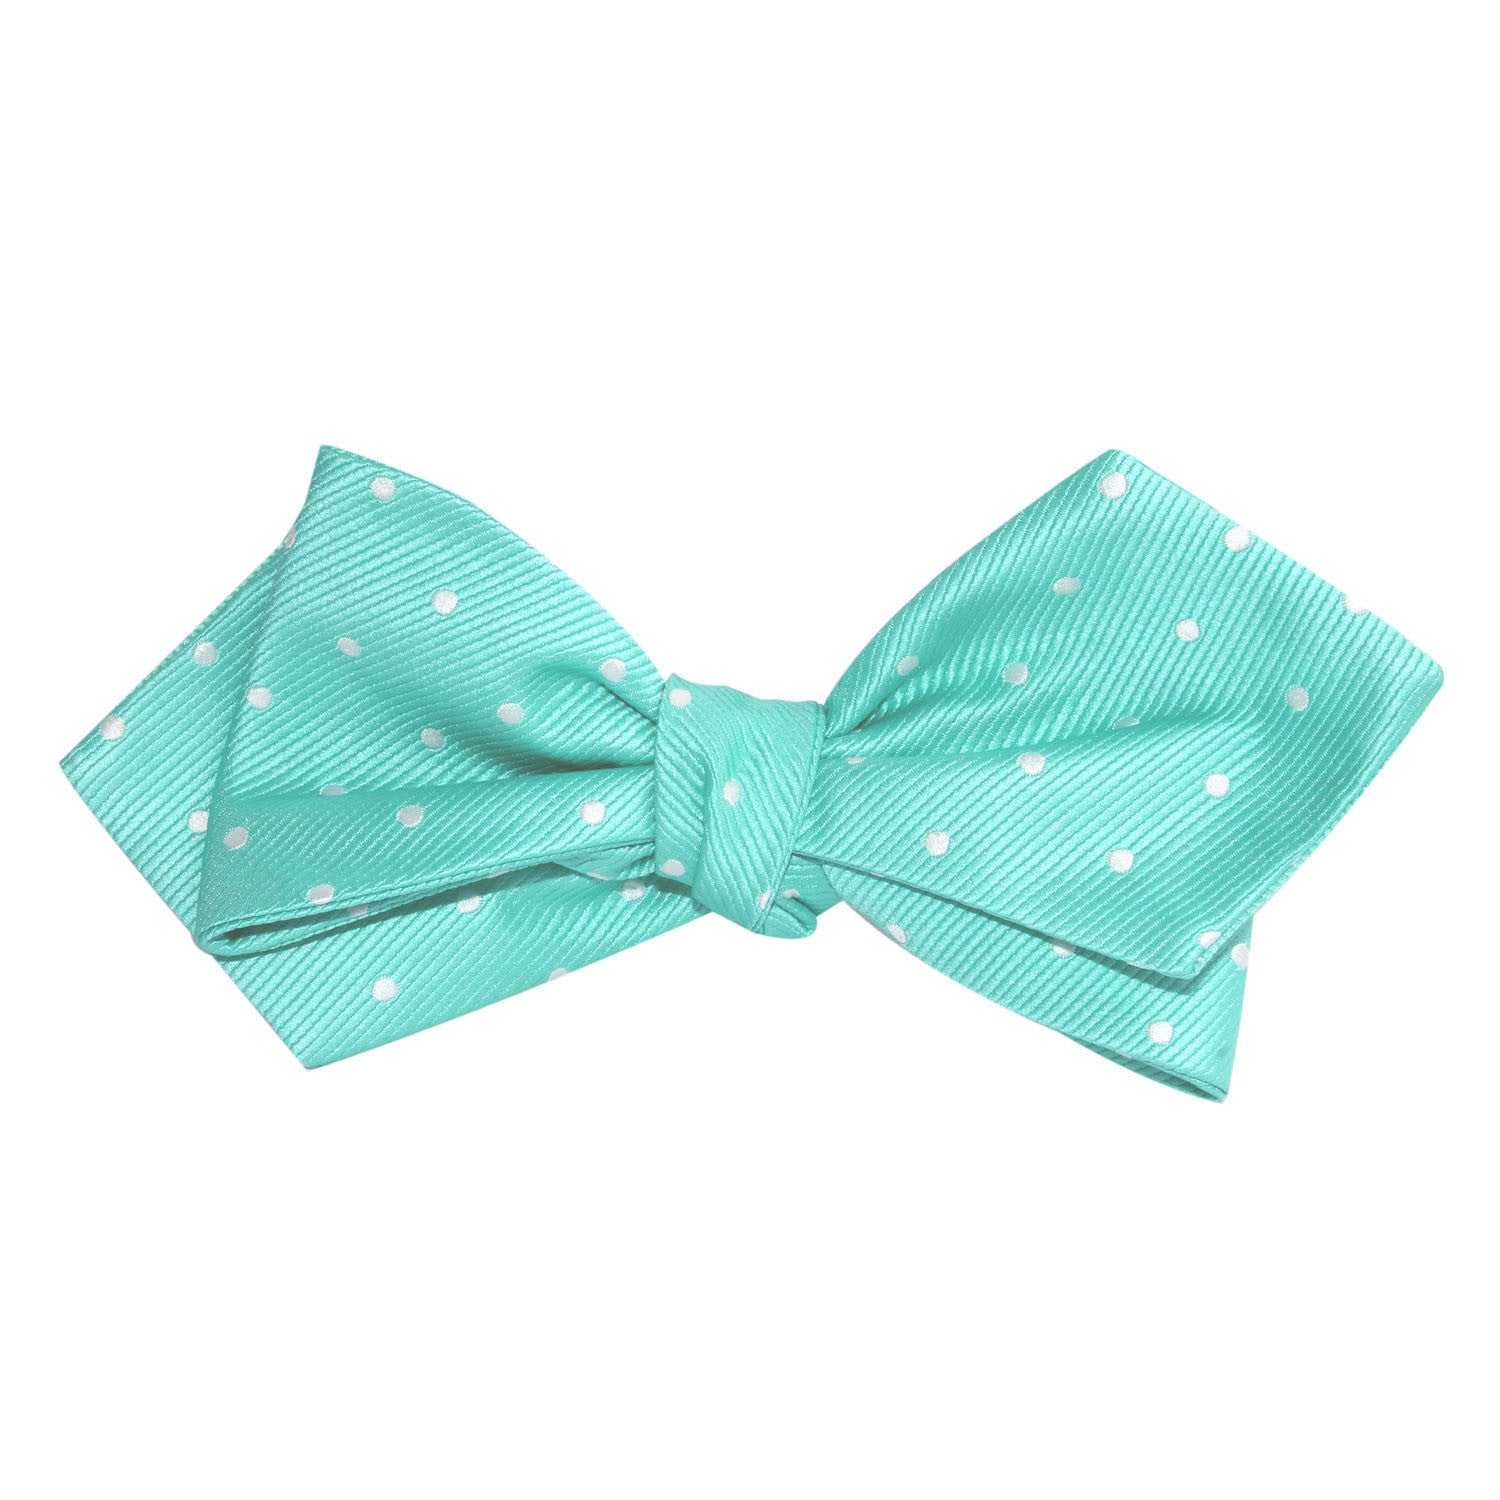 Seafoam Green with White Polka Dots Self Tie Diamond Tip Bow Tie 3